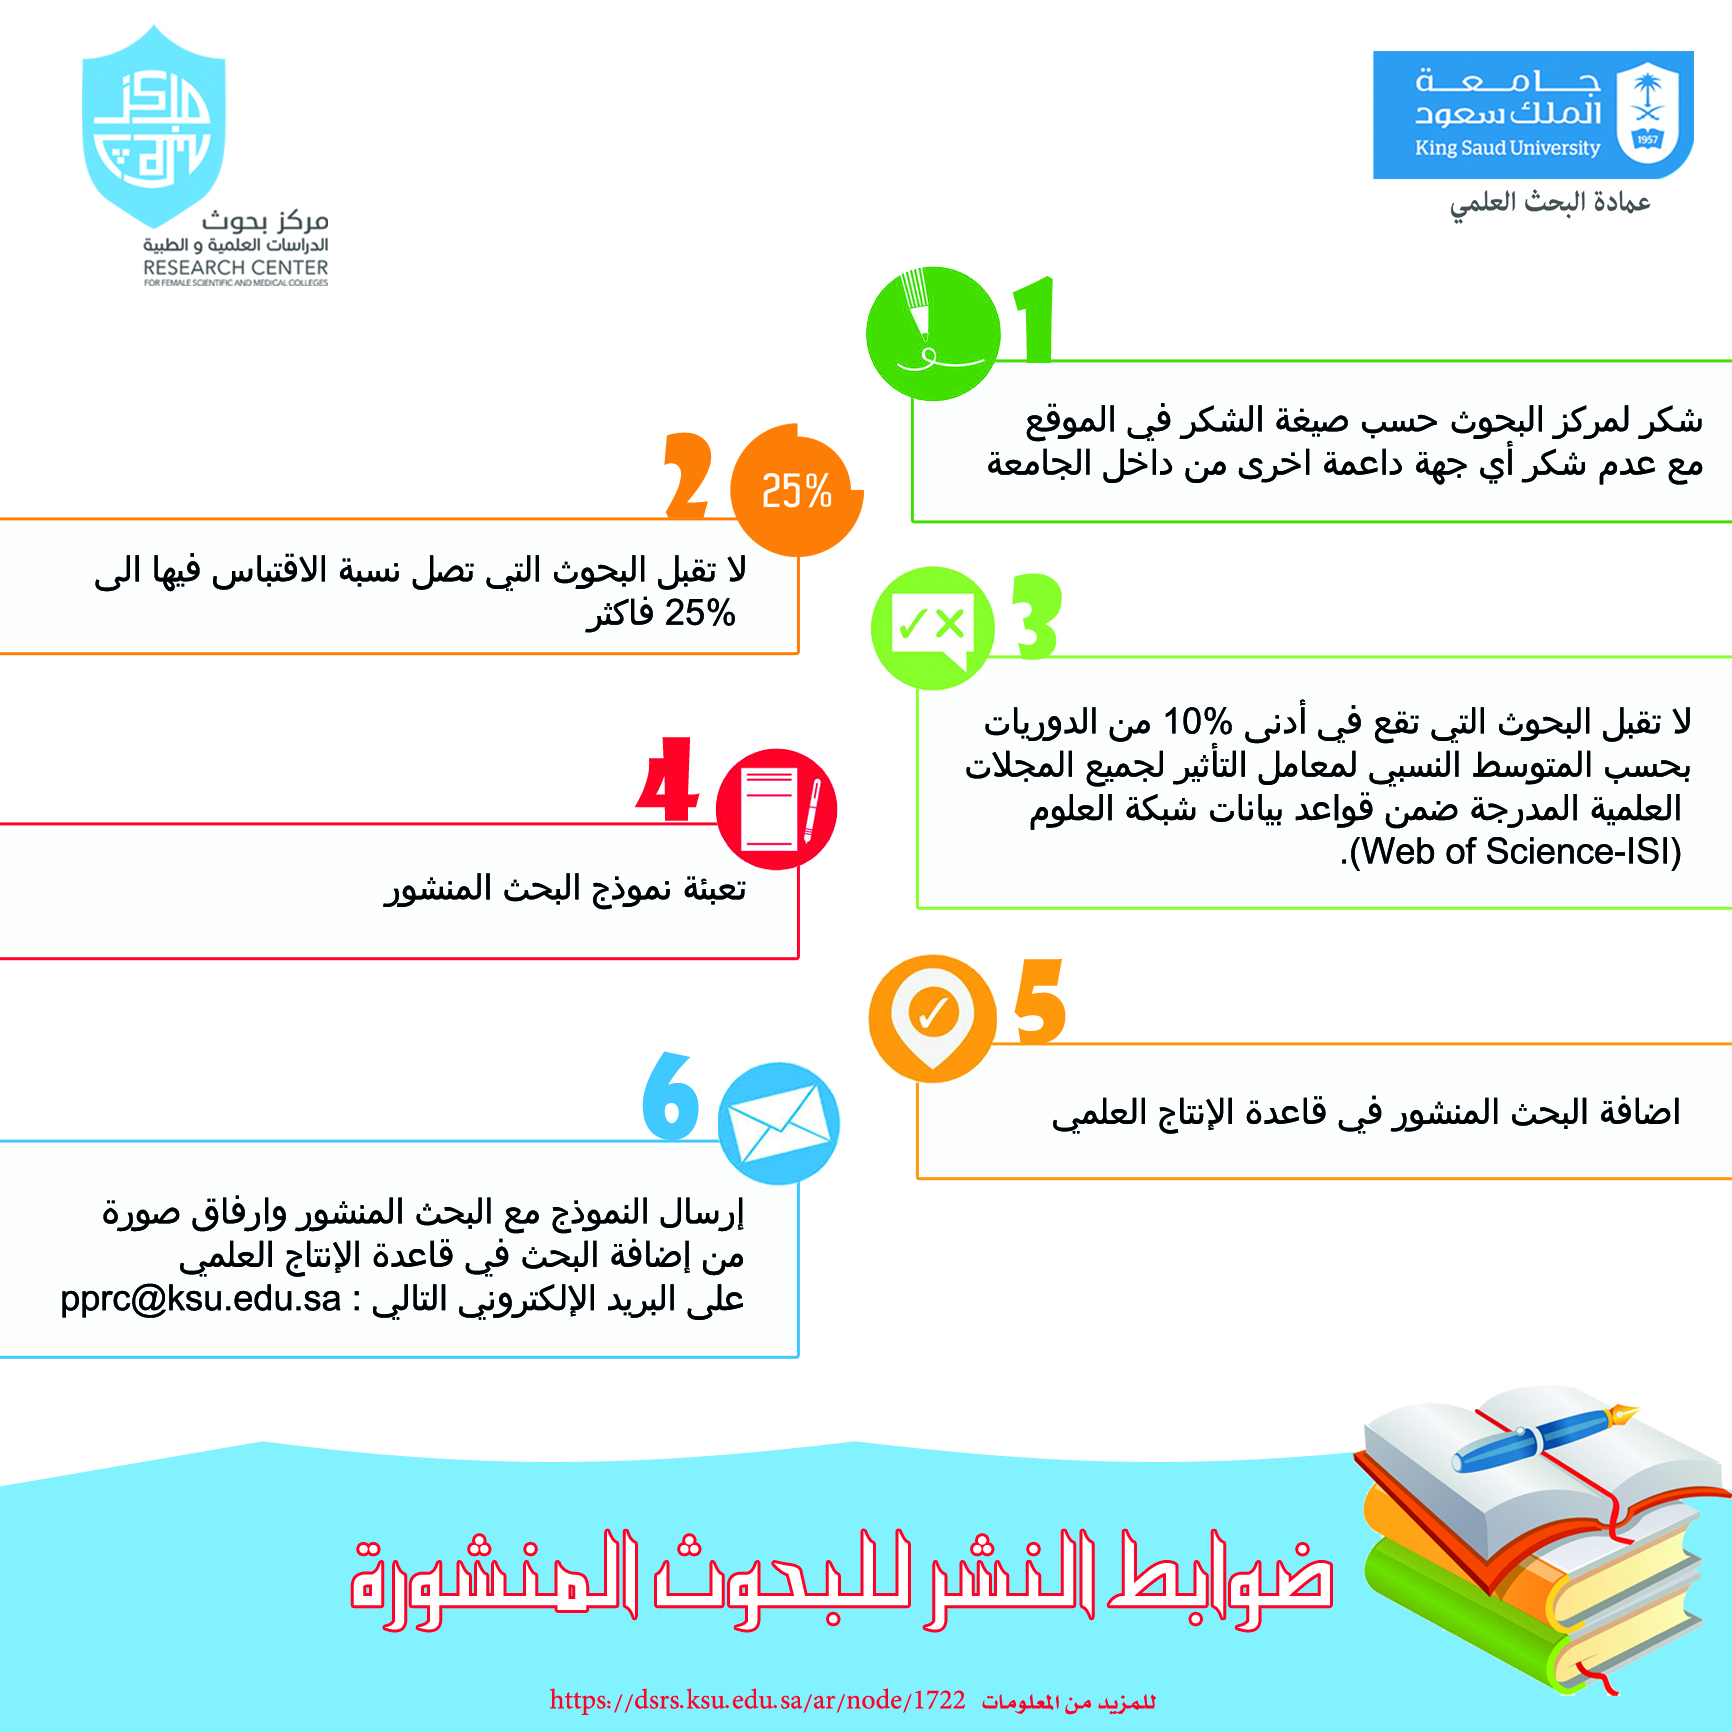 خطة البحث جامعة الملك سعود